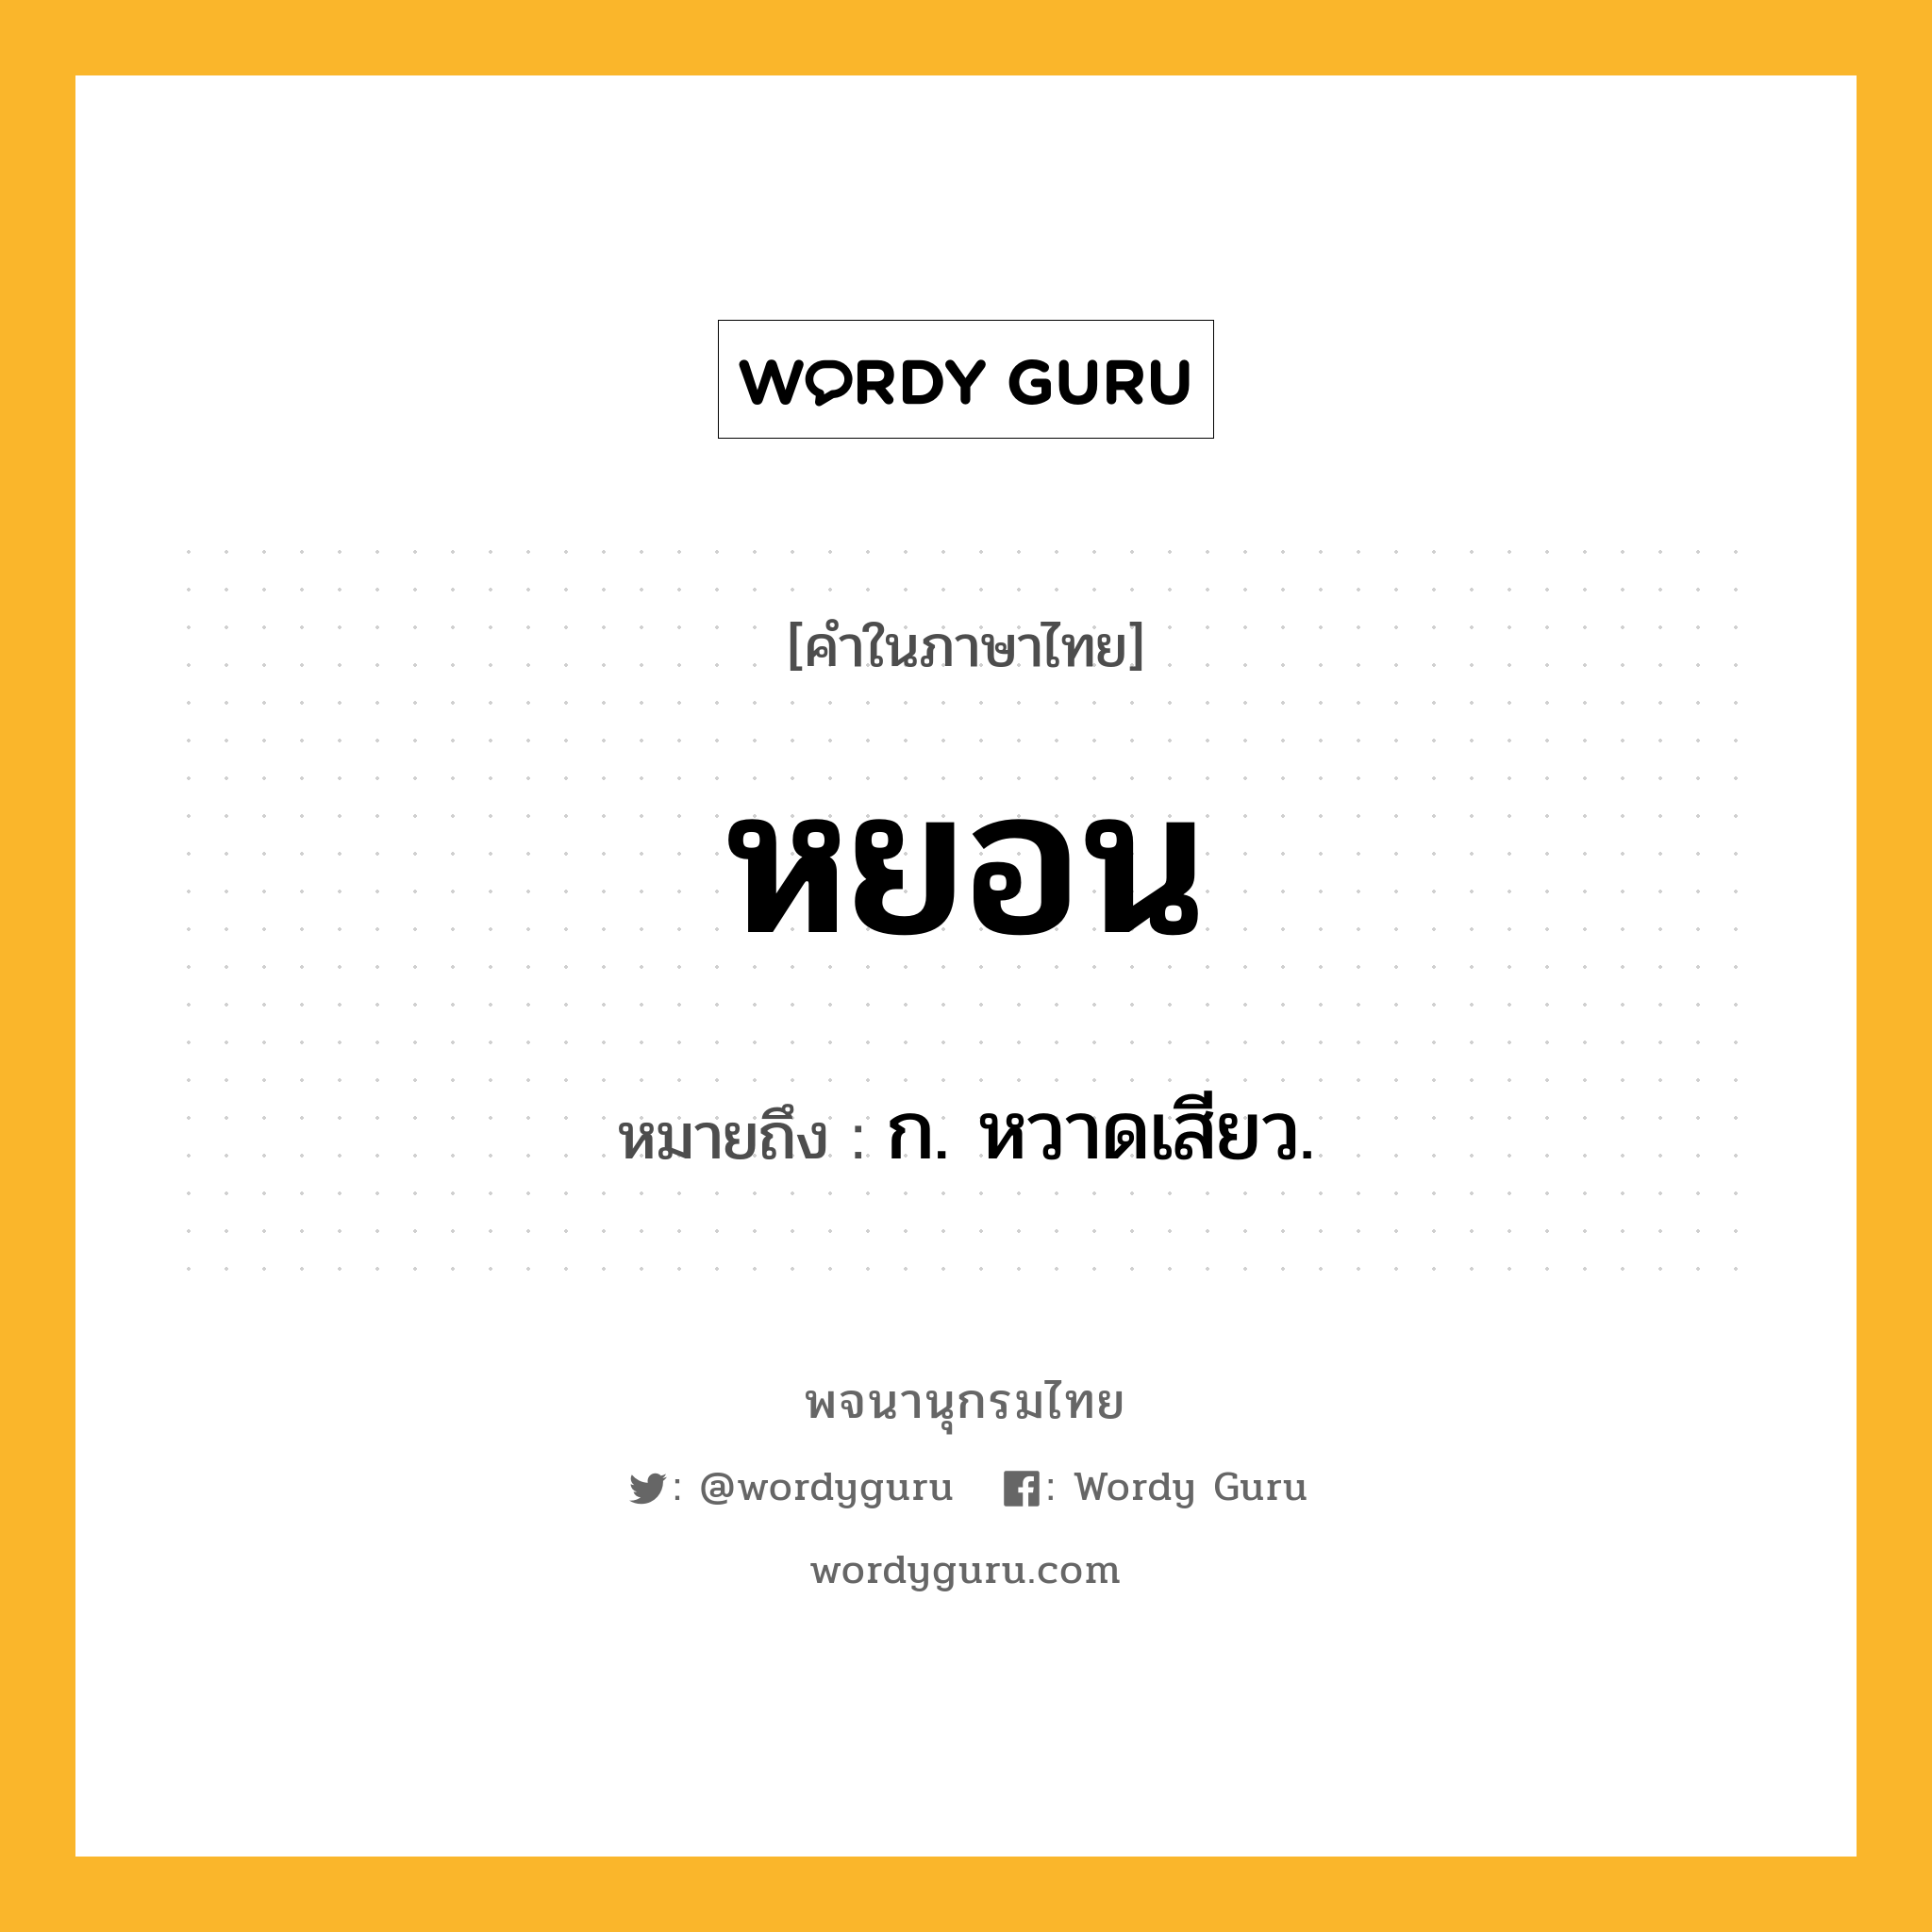 หยอน ความหมาย หมายถึงอะไร?, คำในภาษาไทย หยอน หมายถึง ก. หวาดเสียว.